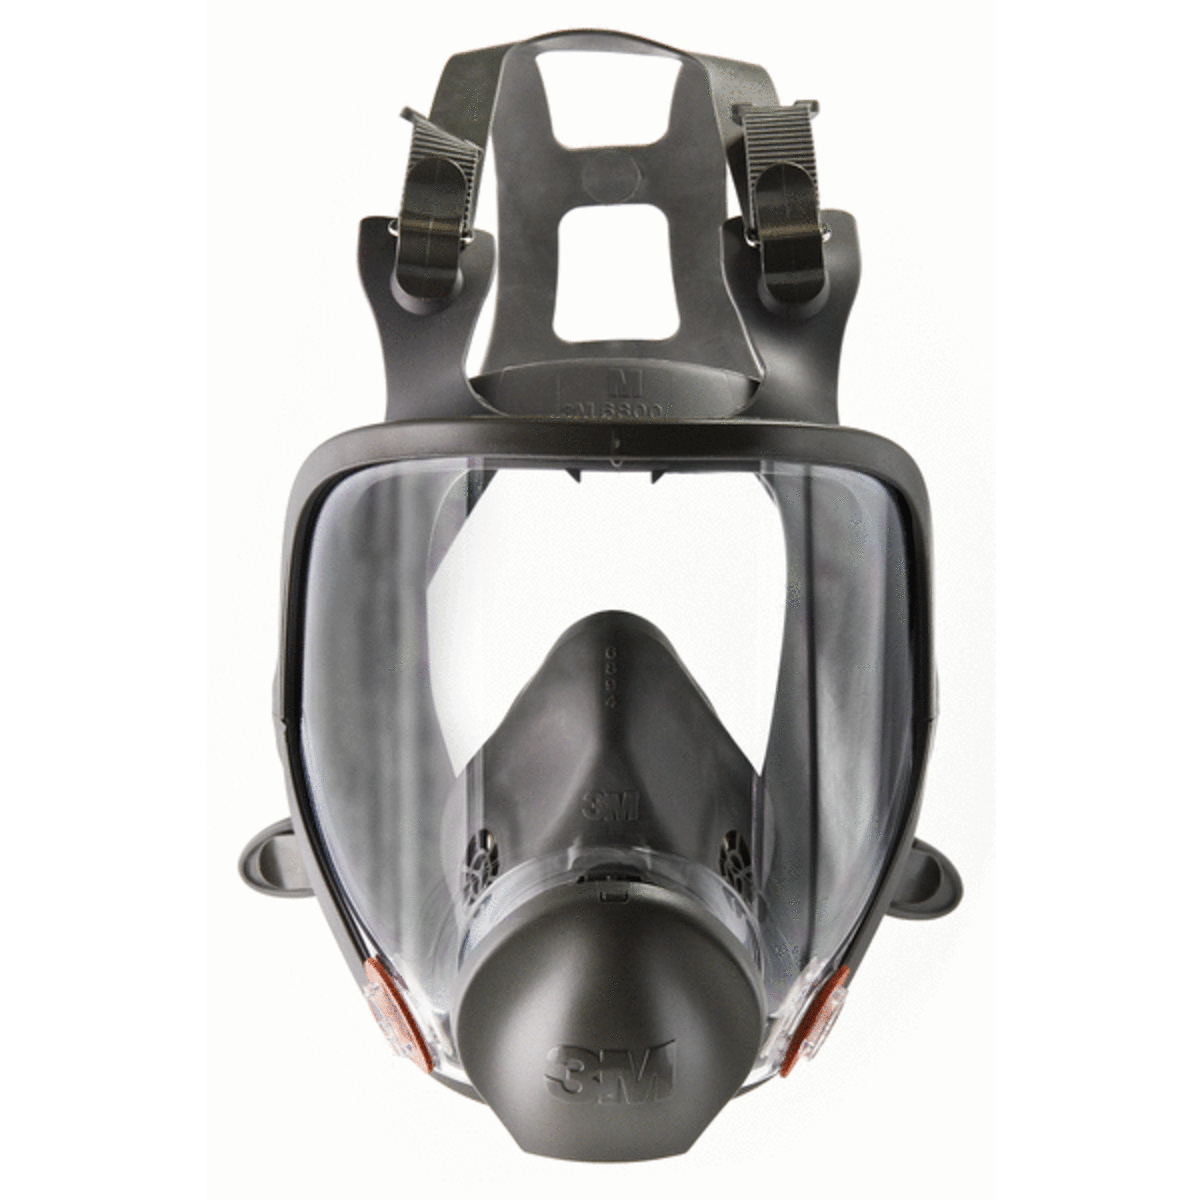 Masque réutilisable bi-cartouches - Modèle 6800 Taille M 3M 6000